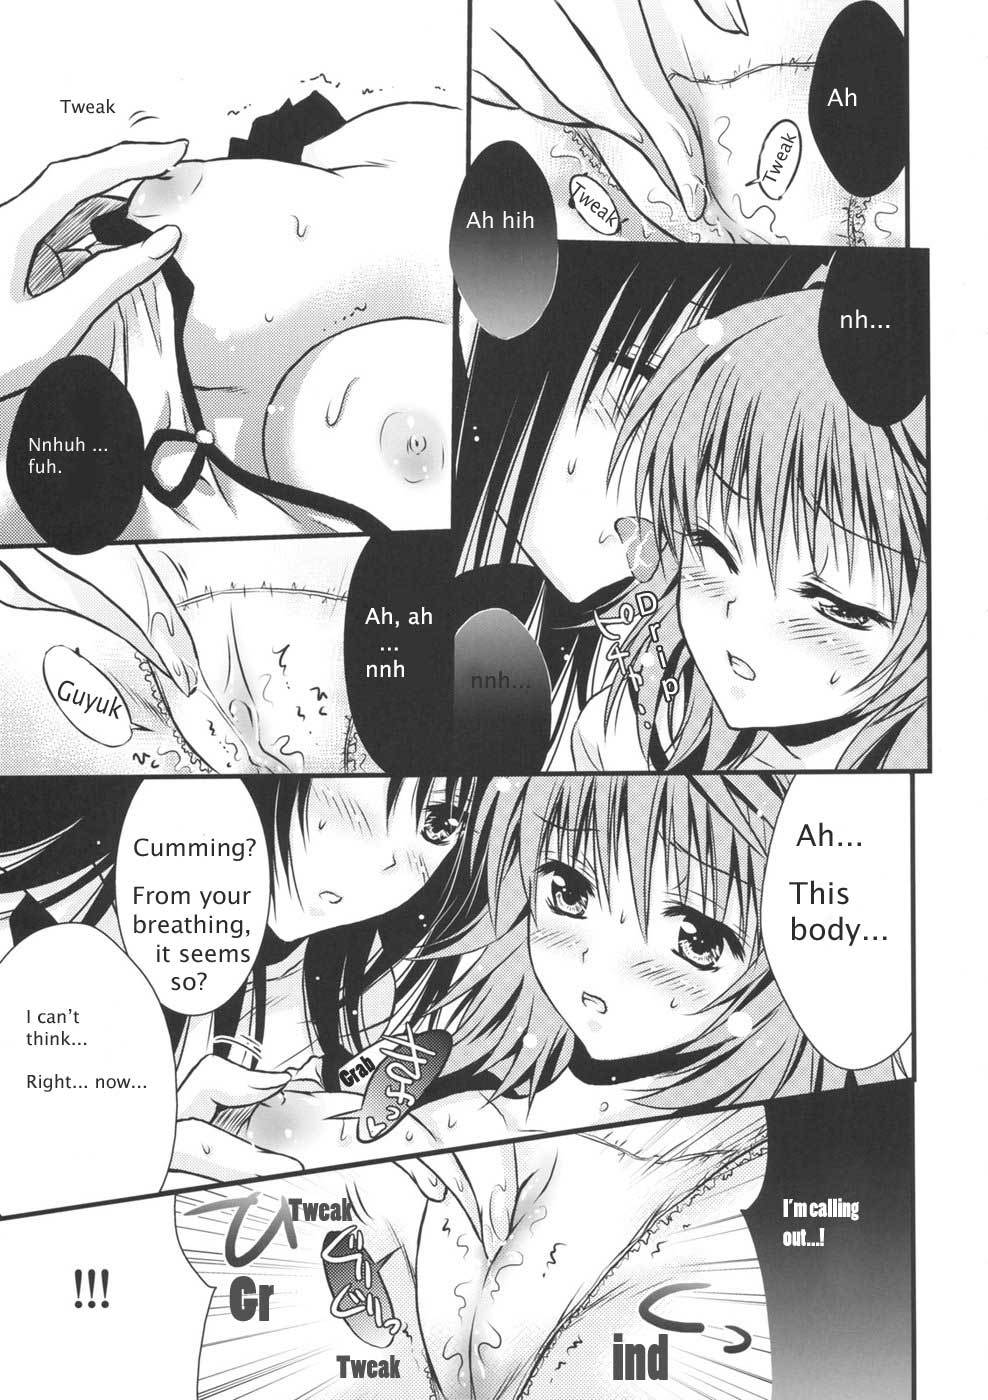 Lovery Summer Girls! to love-ru 14 hentai manga